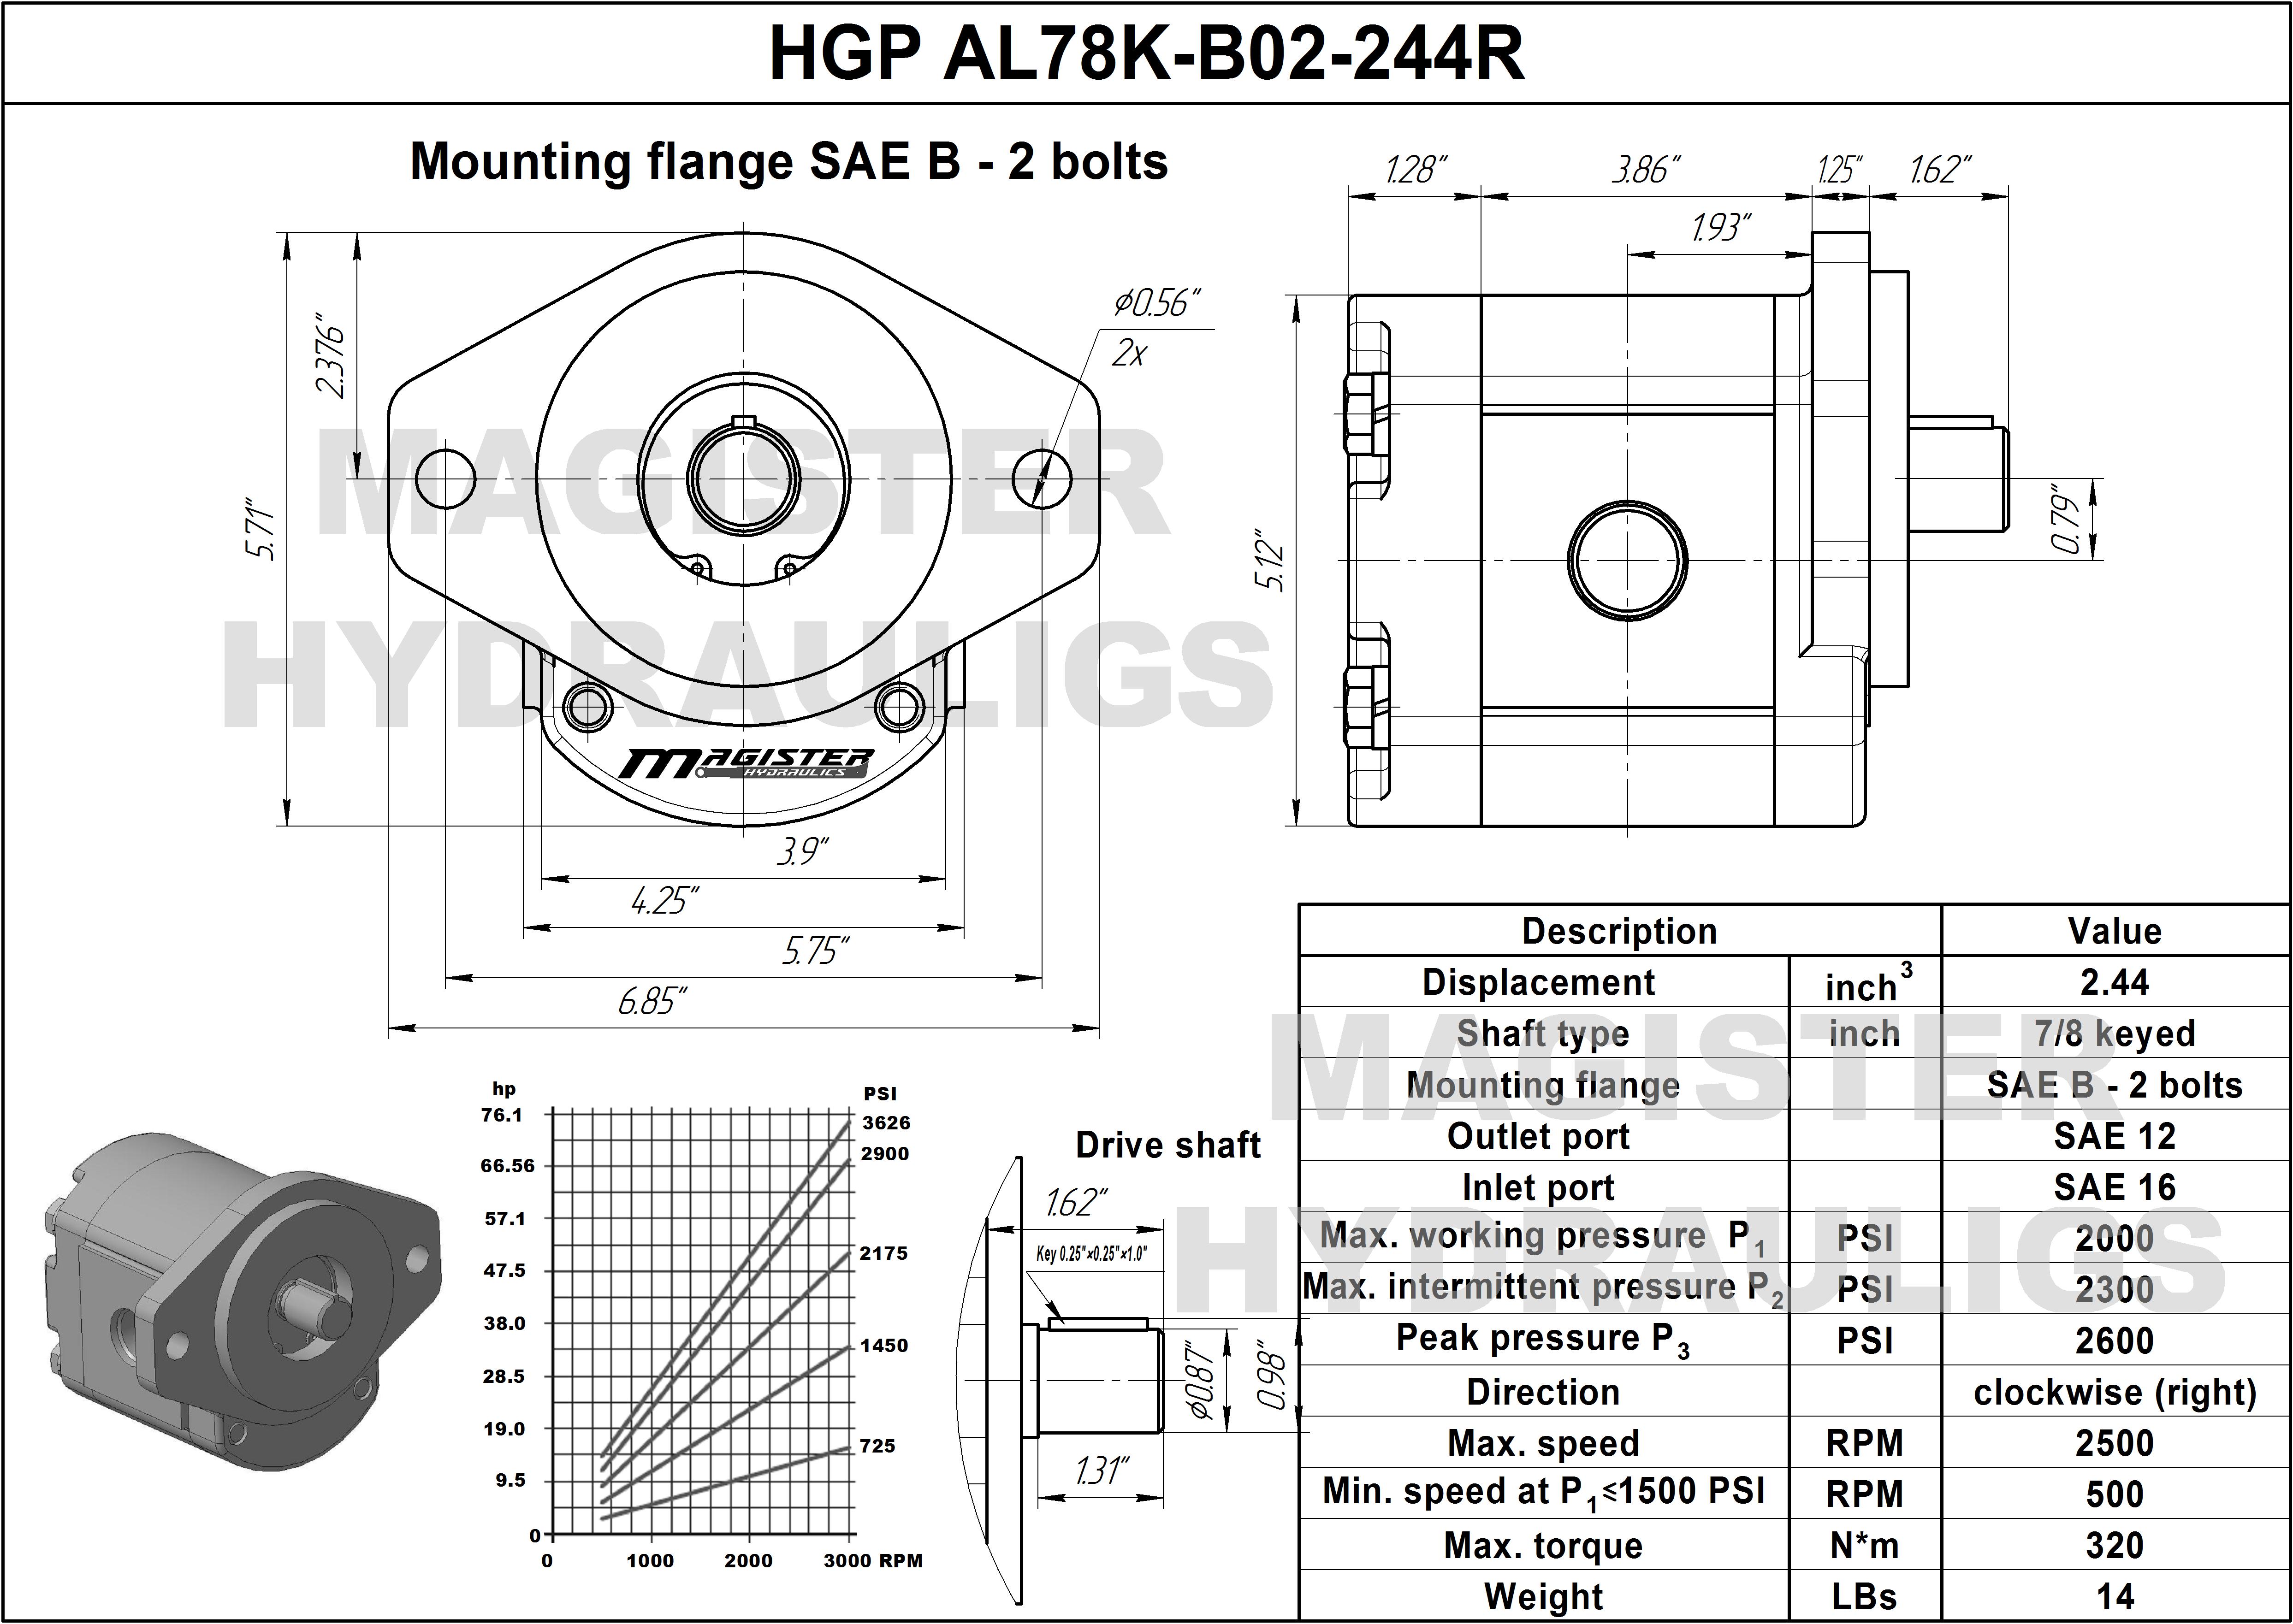 2.44 CID hydraulic gear pump, 7/8 keyed shaft clockwise gear pump | Magister Hydraulics